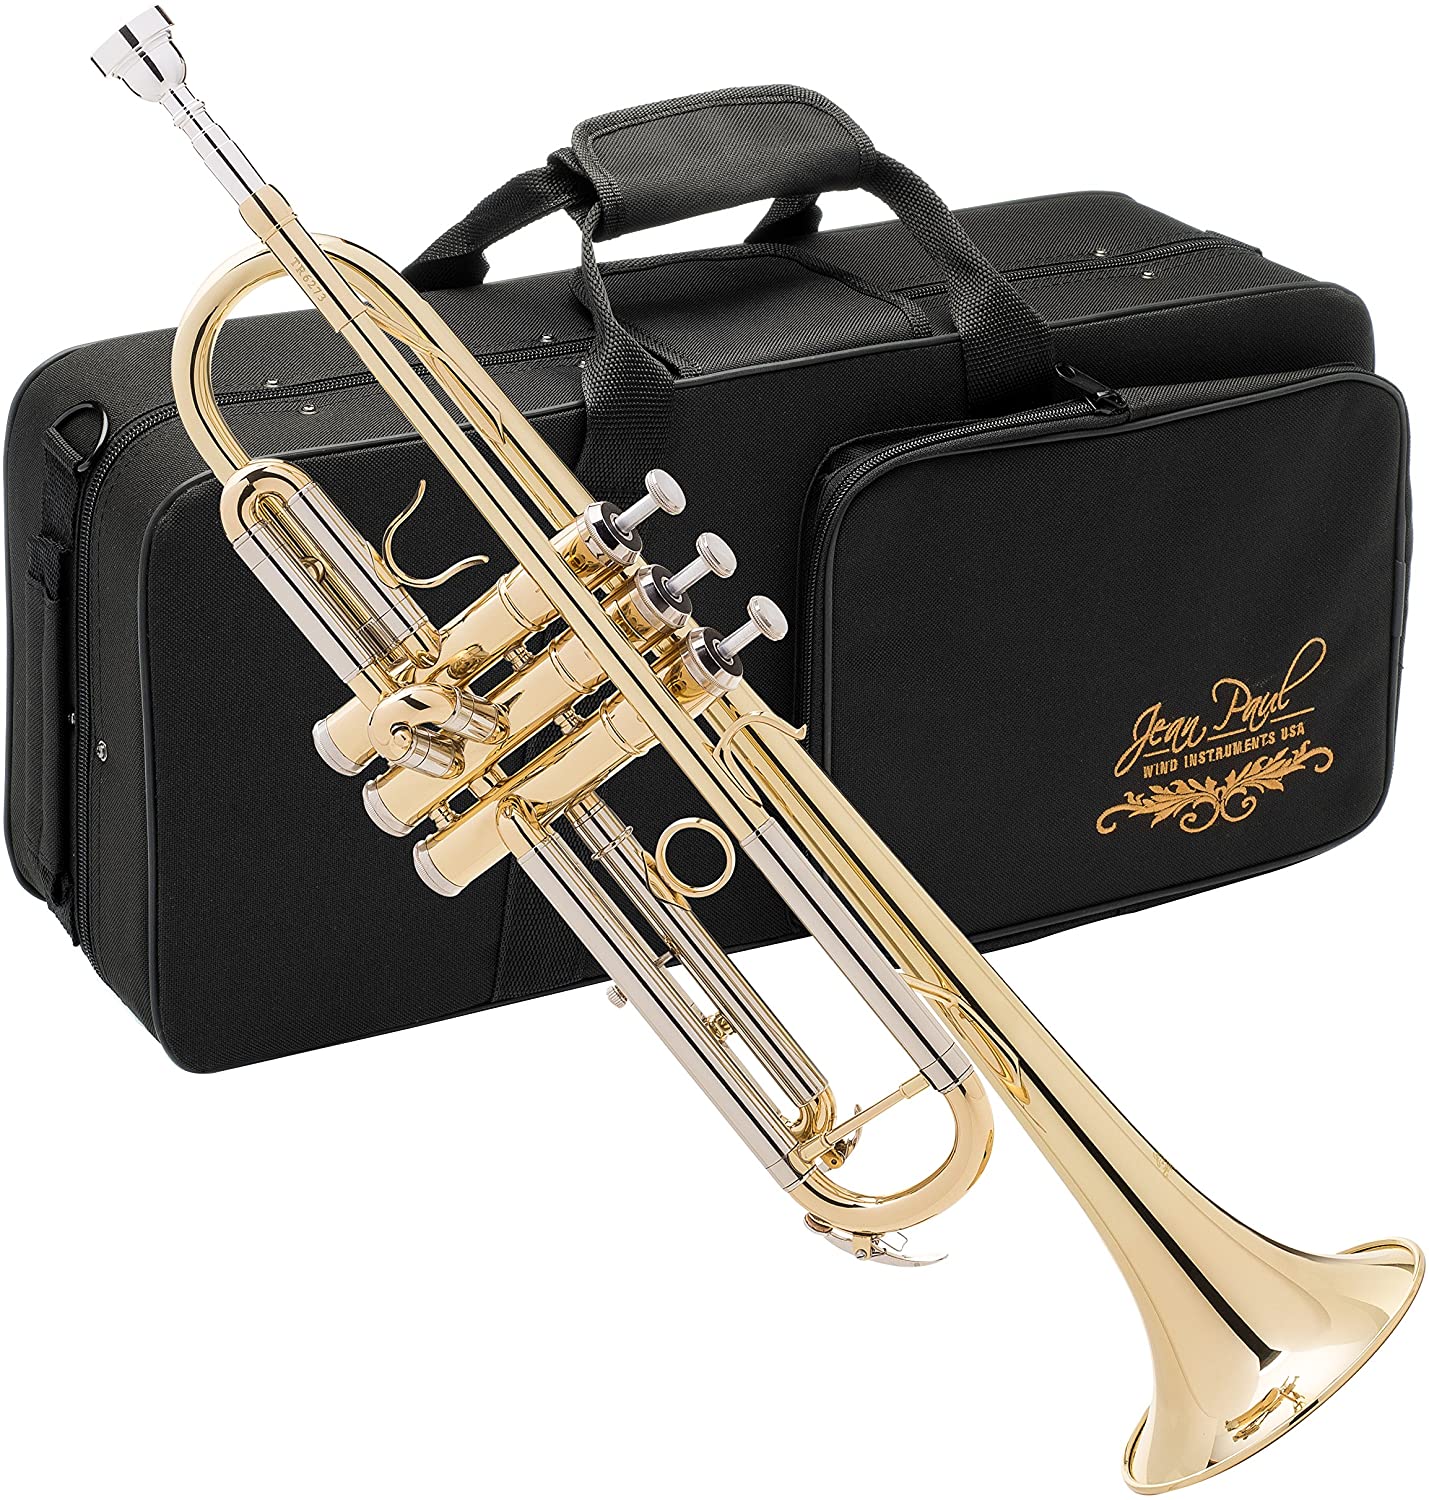 Jean-Paul USA TR-330 Standard Trumpet